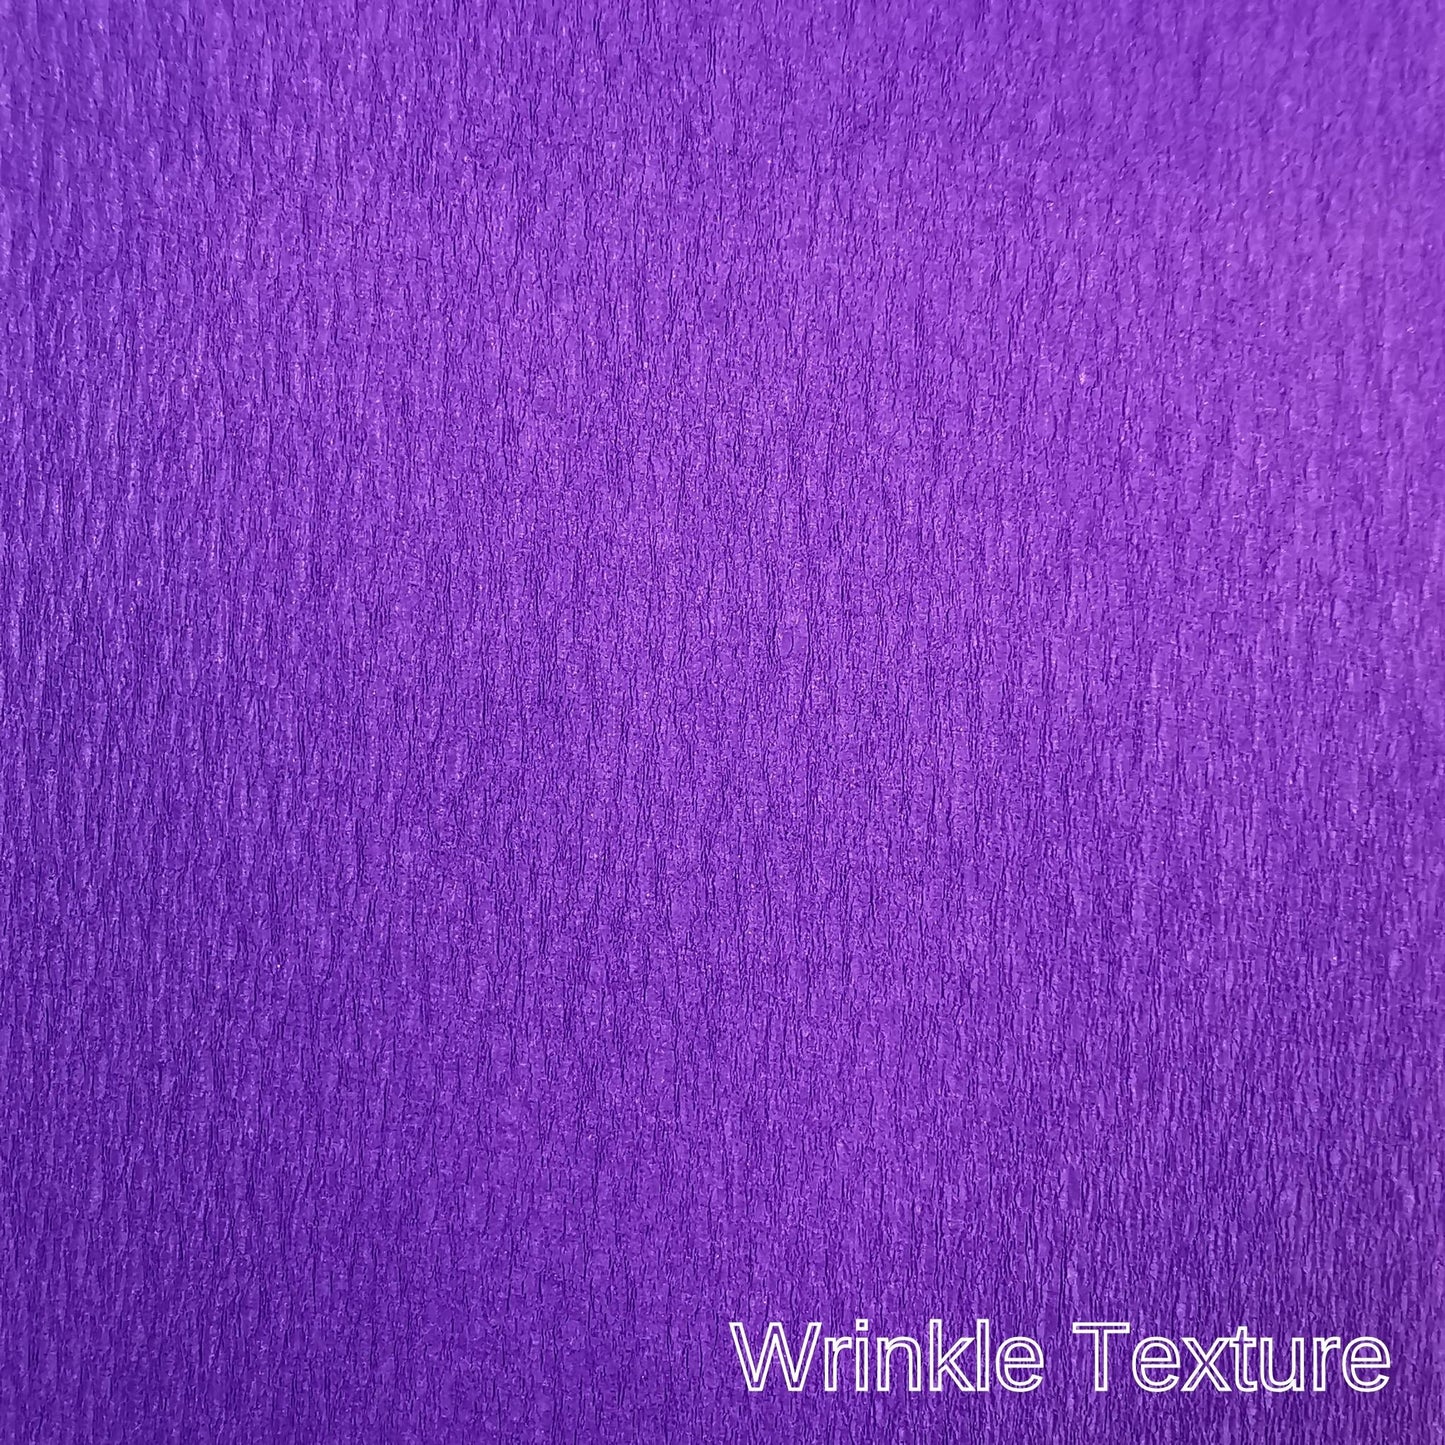 Crepe paper 3m 65% Stretch Purple